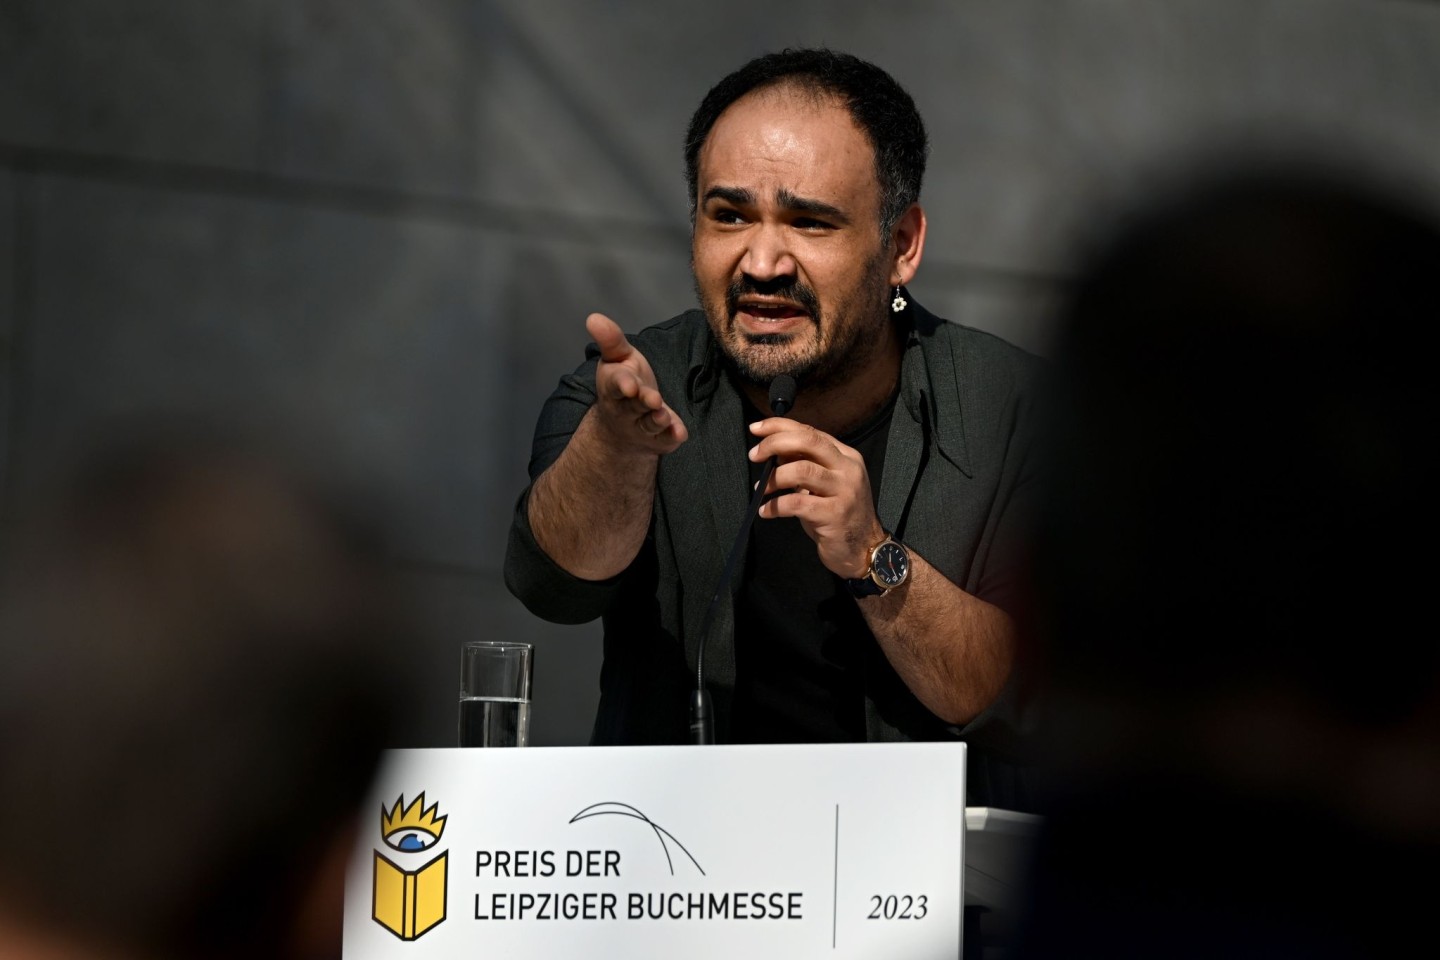 Der Autor Dinçer Güçyeter erhält den Preis der Leipziger Buchmesse in der Kategorie Belletristik.